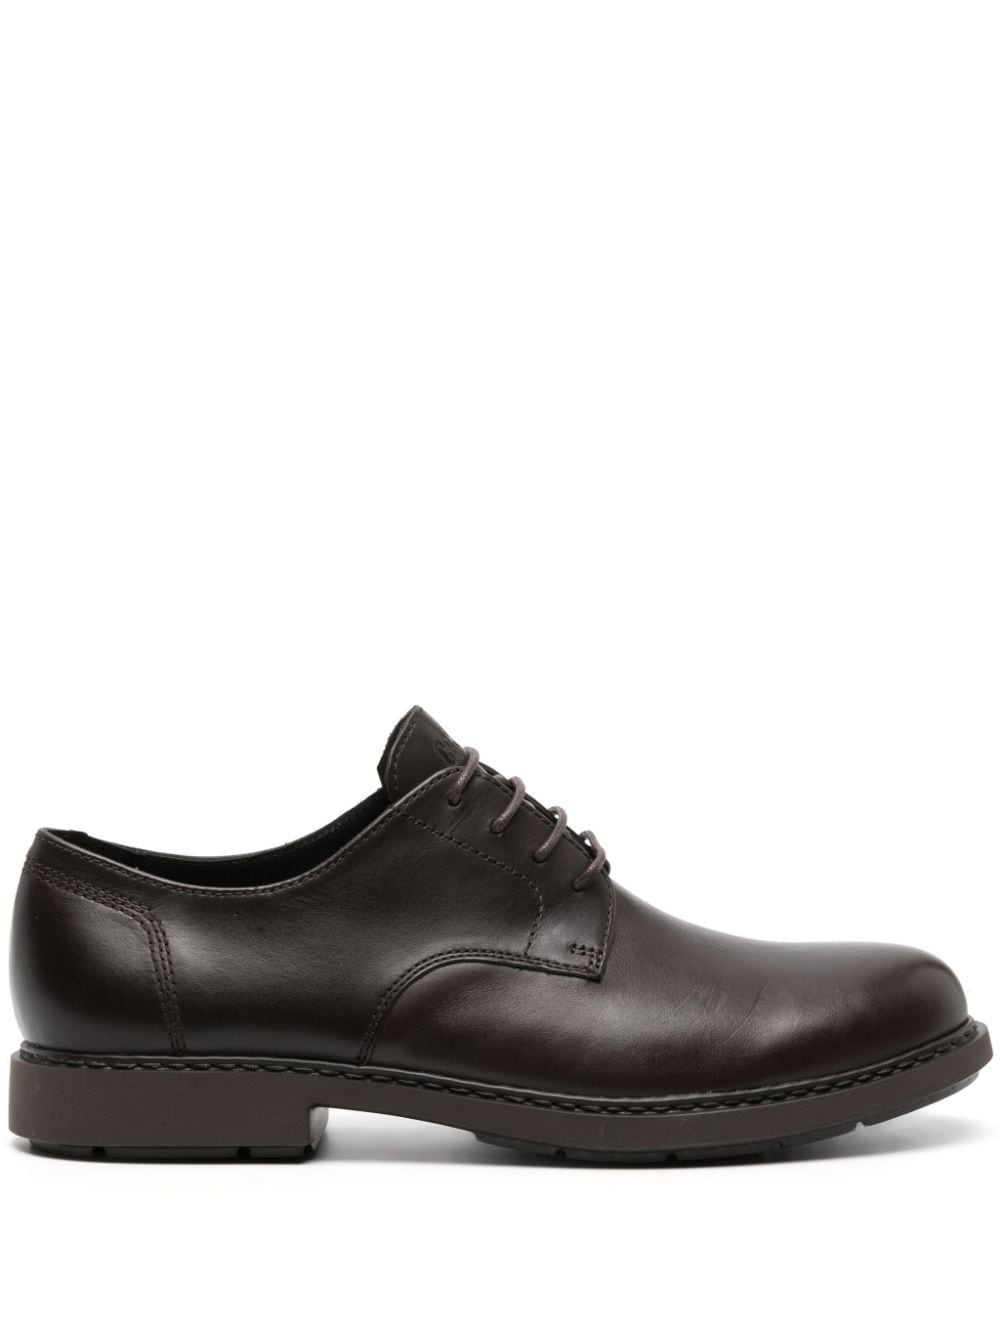 Camper Neuman leather derby shoes - Brown von Camper